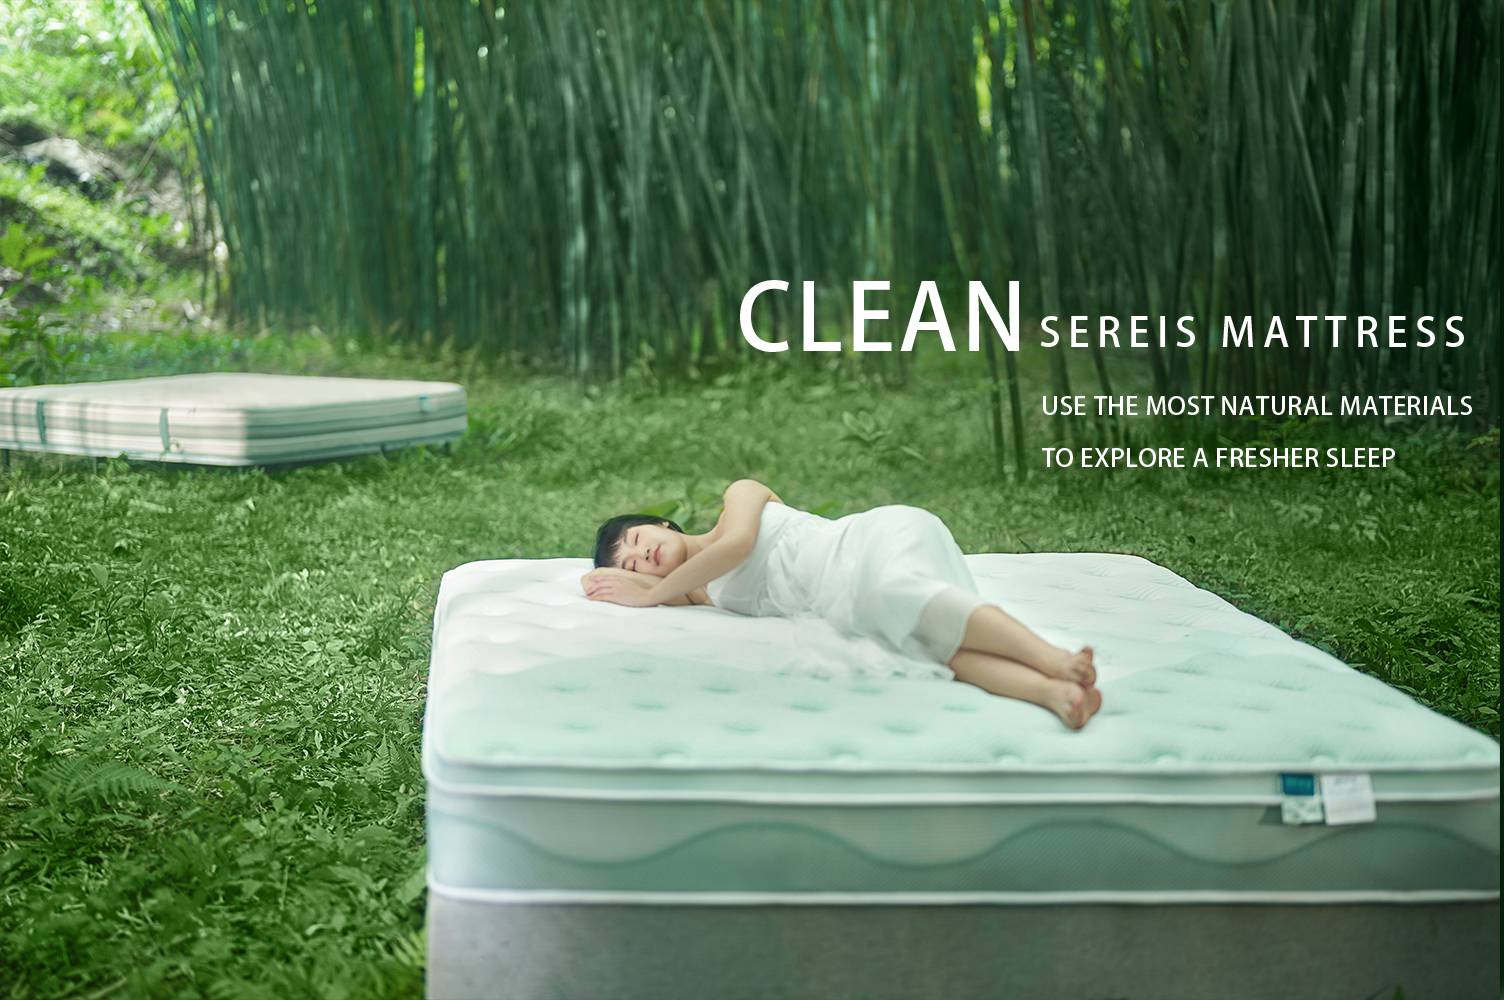 El colchón de la serie limpia LINSY, ofrece una experiencia de sueño fresca